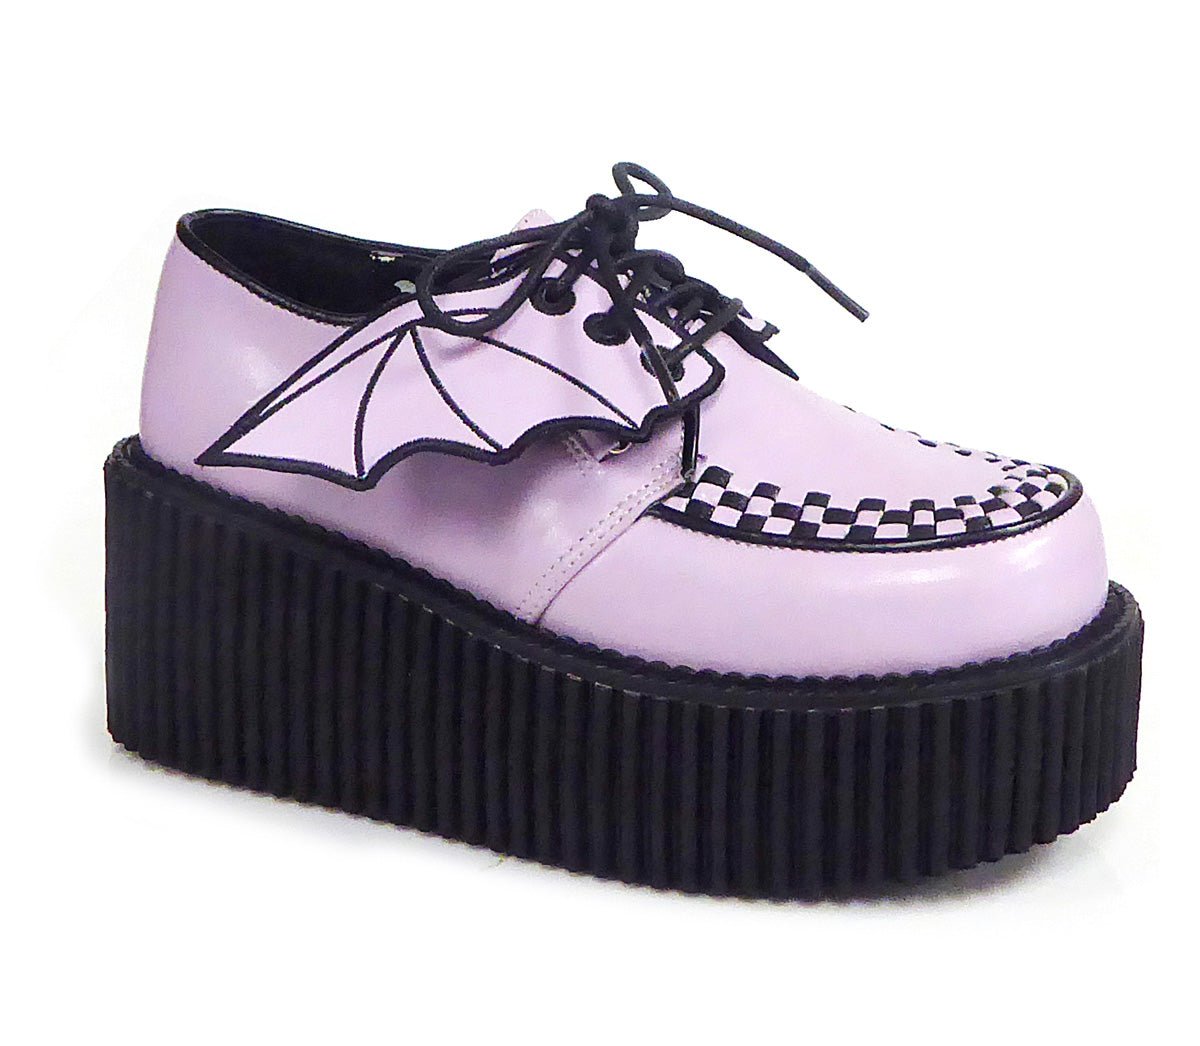 Sapato Creeper 215 - Demonia (encomenda)DemoniaSAPATOSPlayPole - Sapatos  exóticos, roupas e acessórios alternativos além de produtos para Pole Dance